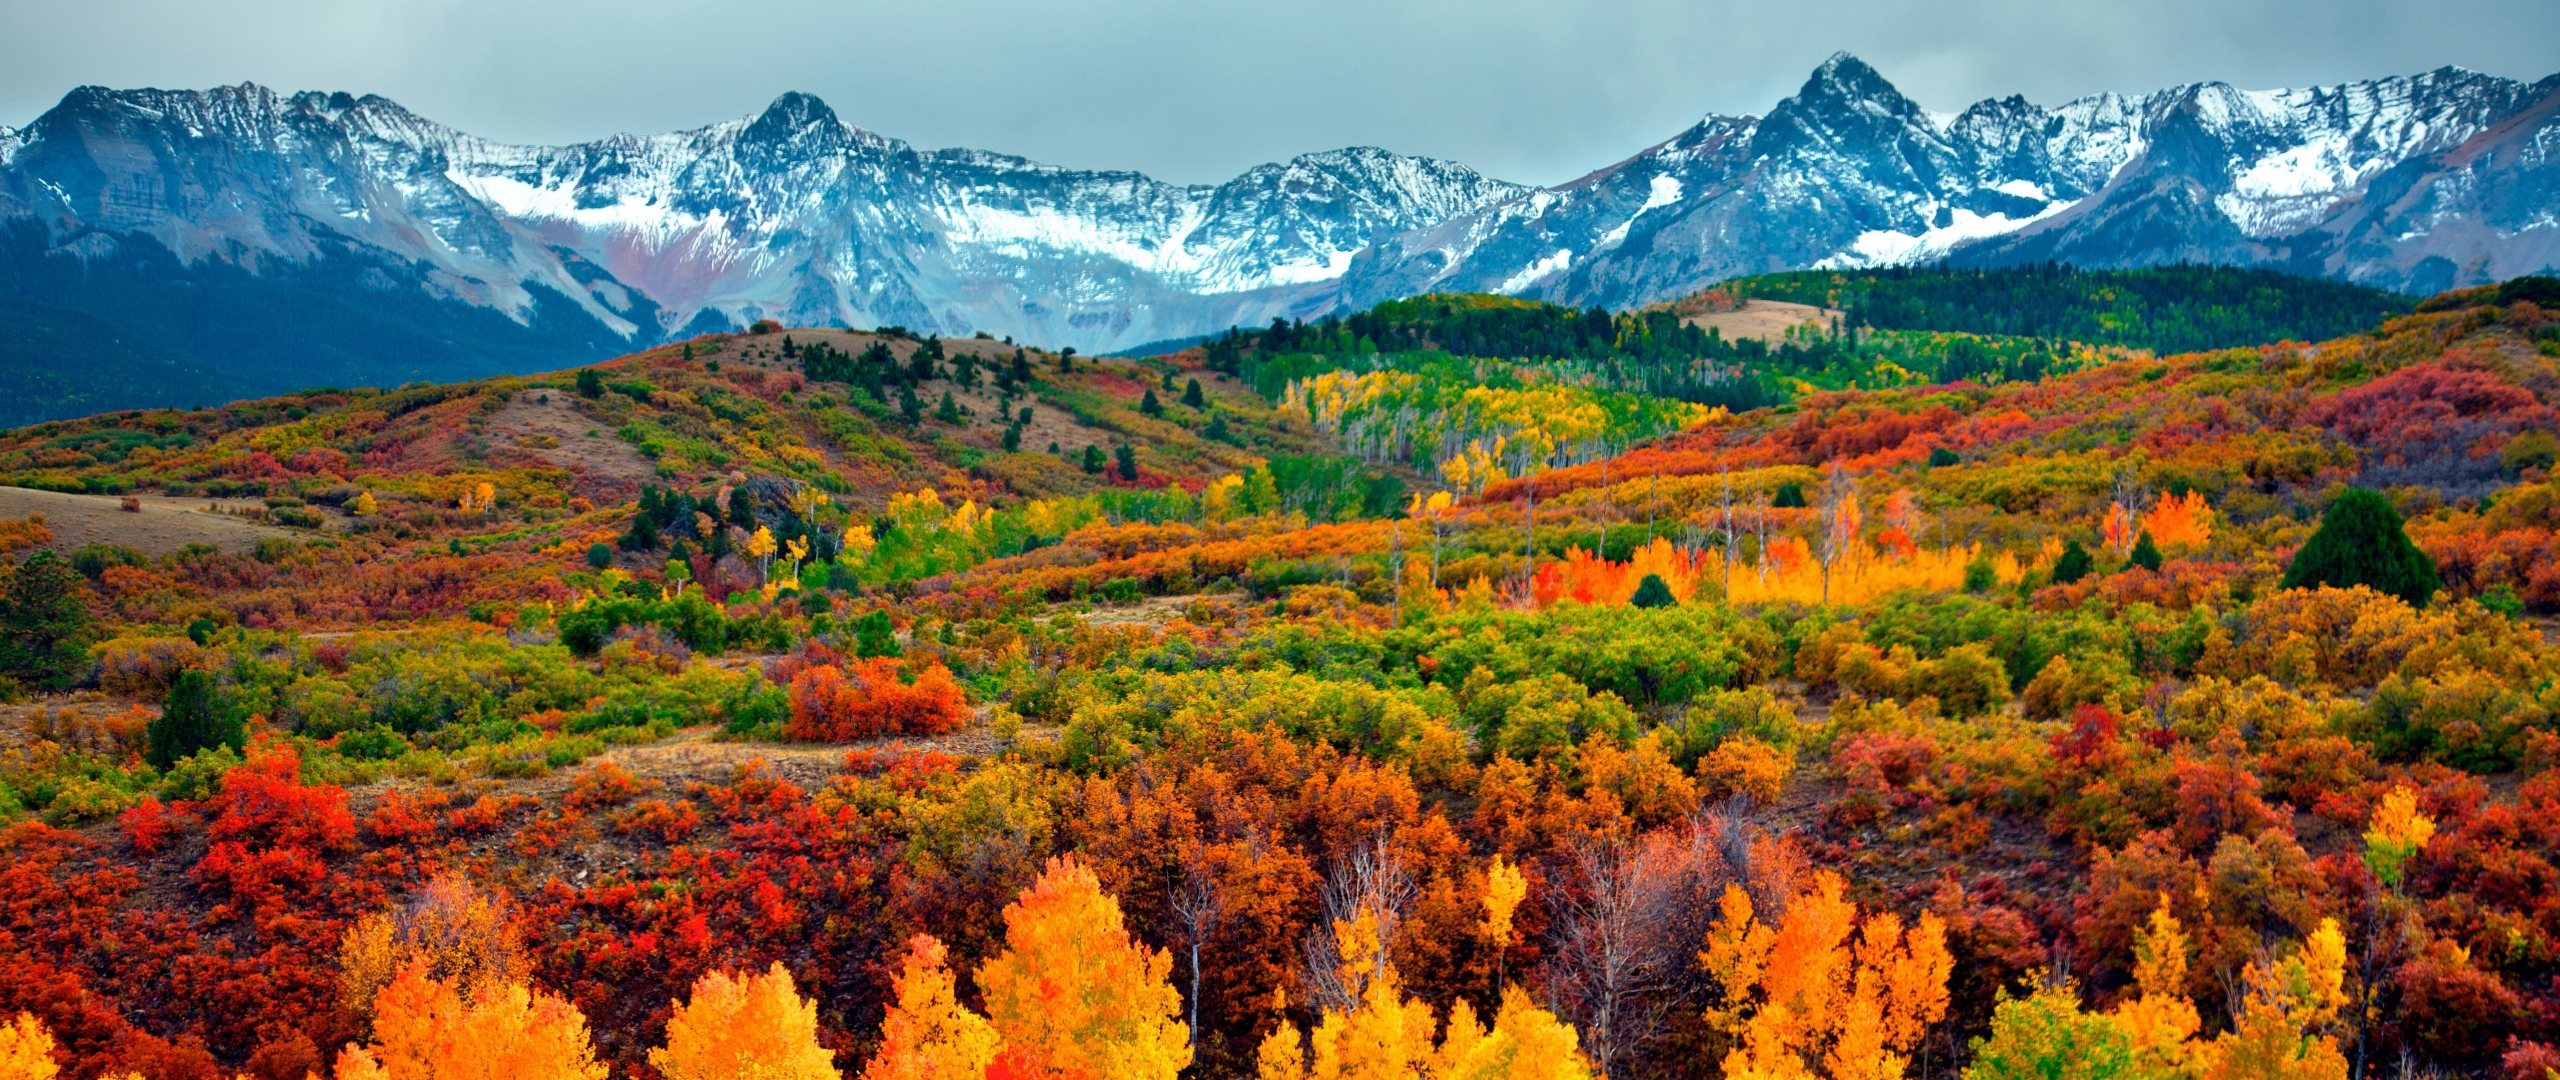 Colorado Fall Colors 2018 - HD Wallpaper 